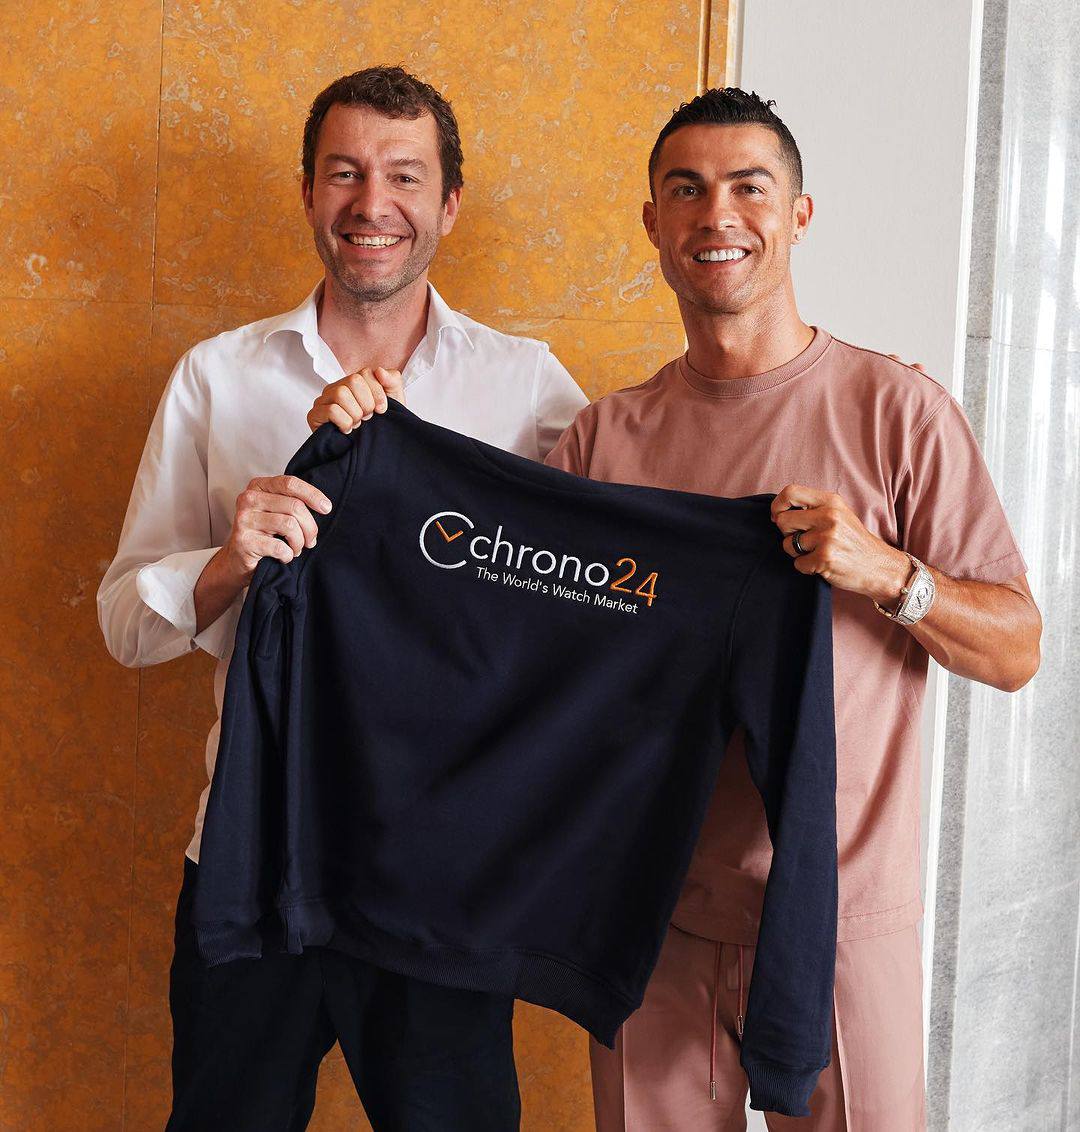 Cristiano Ronaldo becomes a shareholder of Chrono24 😎